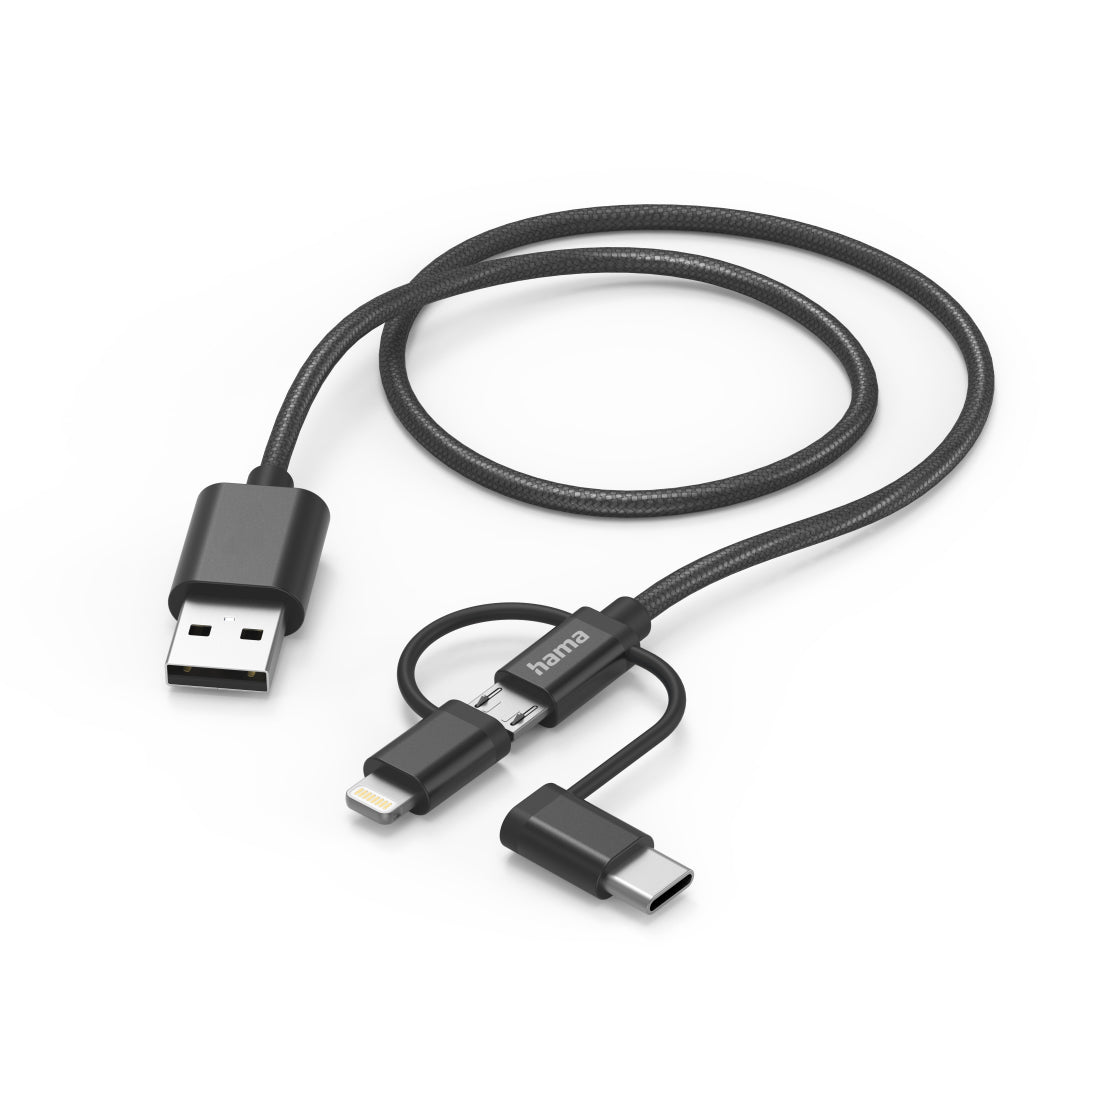 Cable HAMA 3in1 micri USB +USB-C +LTG, 1,5m, negro